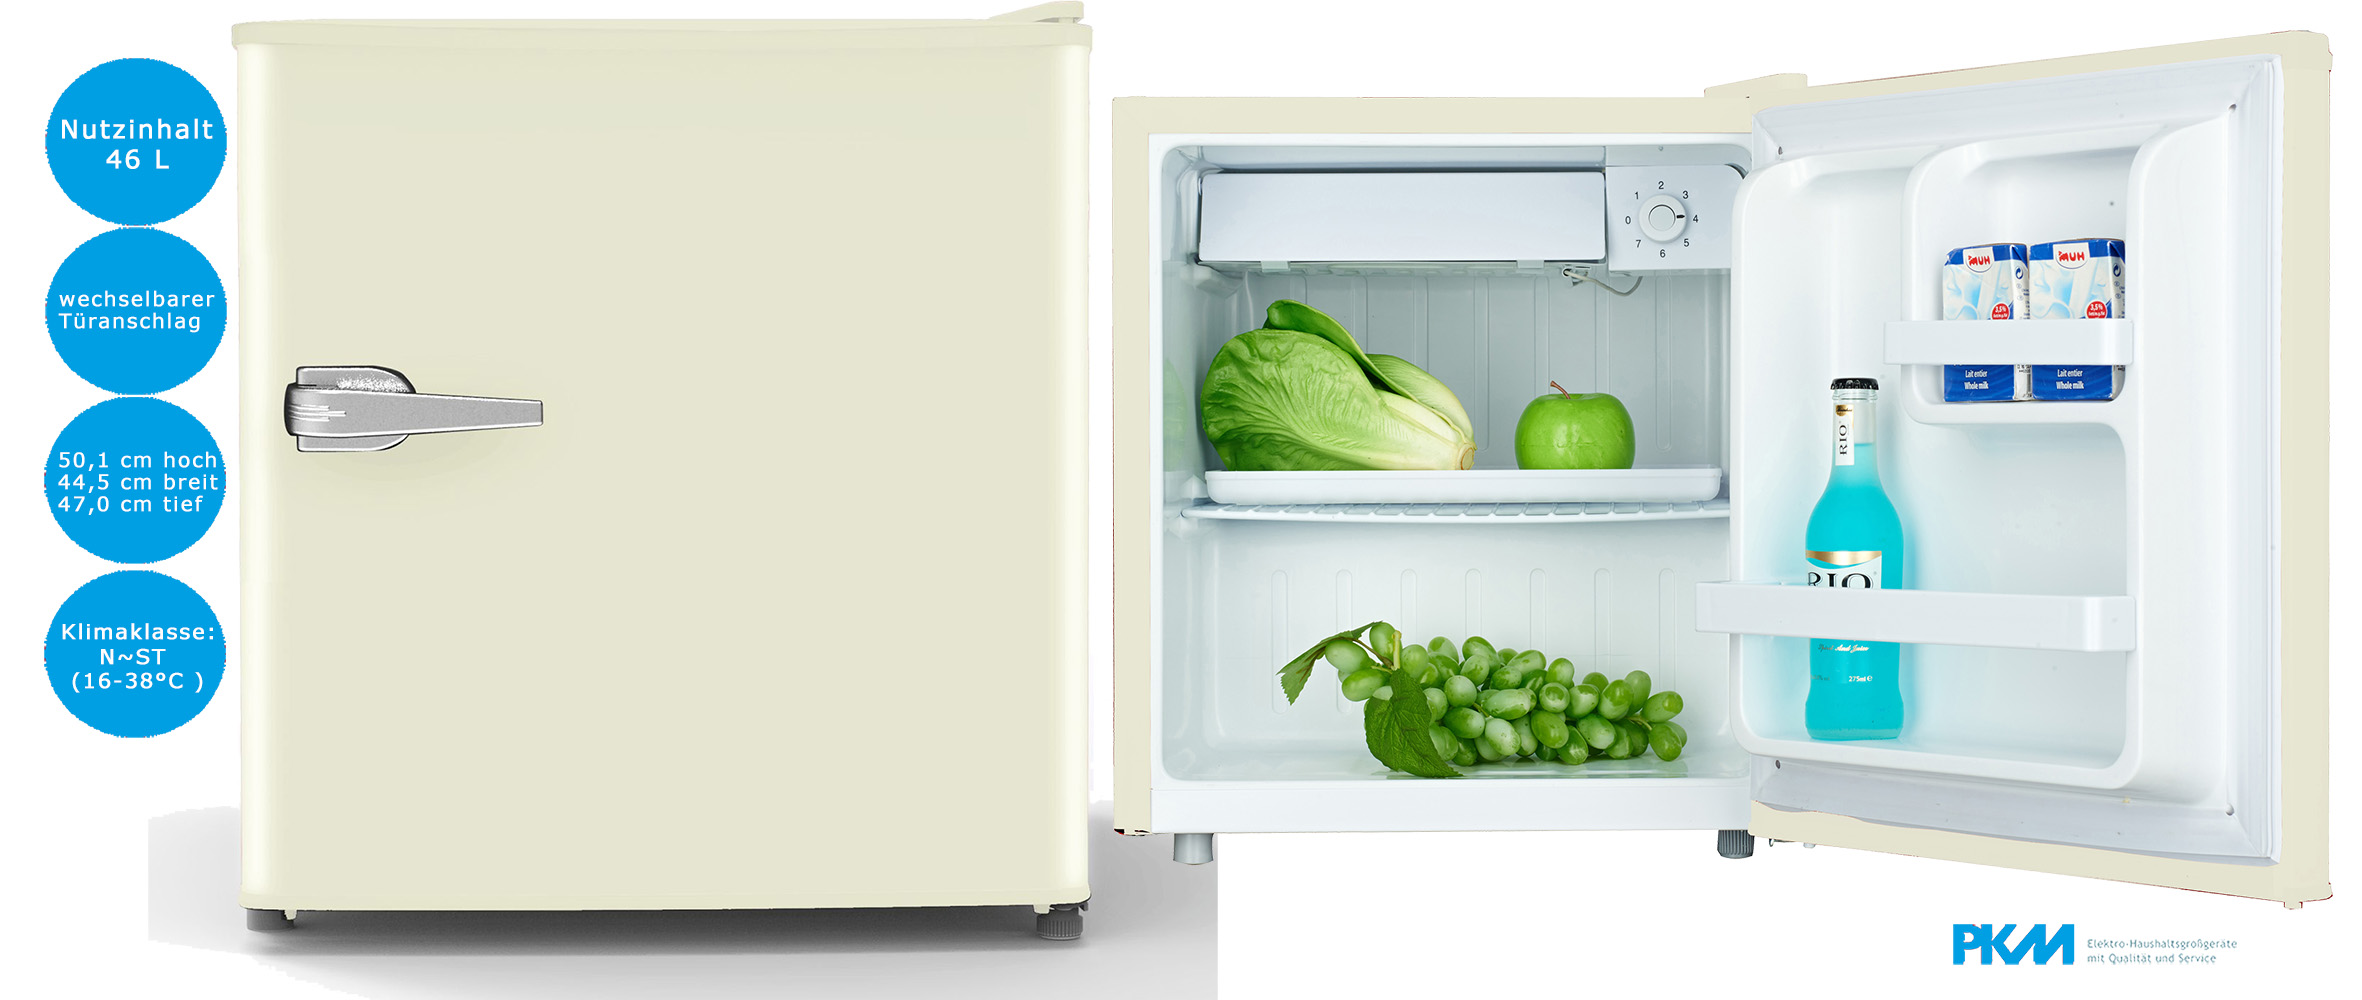 PKM Retro Mini Kühlschrank 46 Liter Creme Kühlbox Tischkühlschrank kompakt, freistehende Kühlschränke, Kühlschrank, Kühlen & Gefrieren